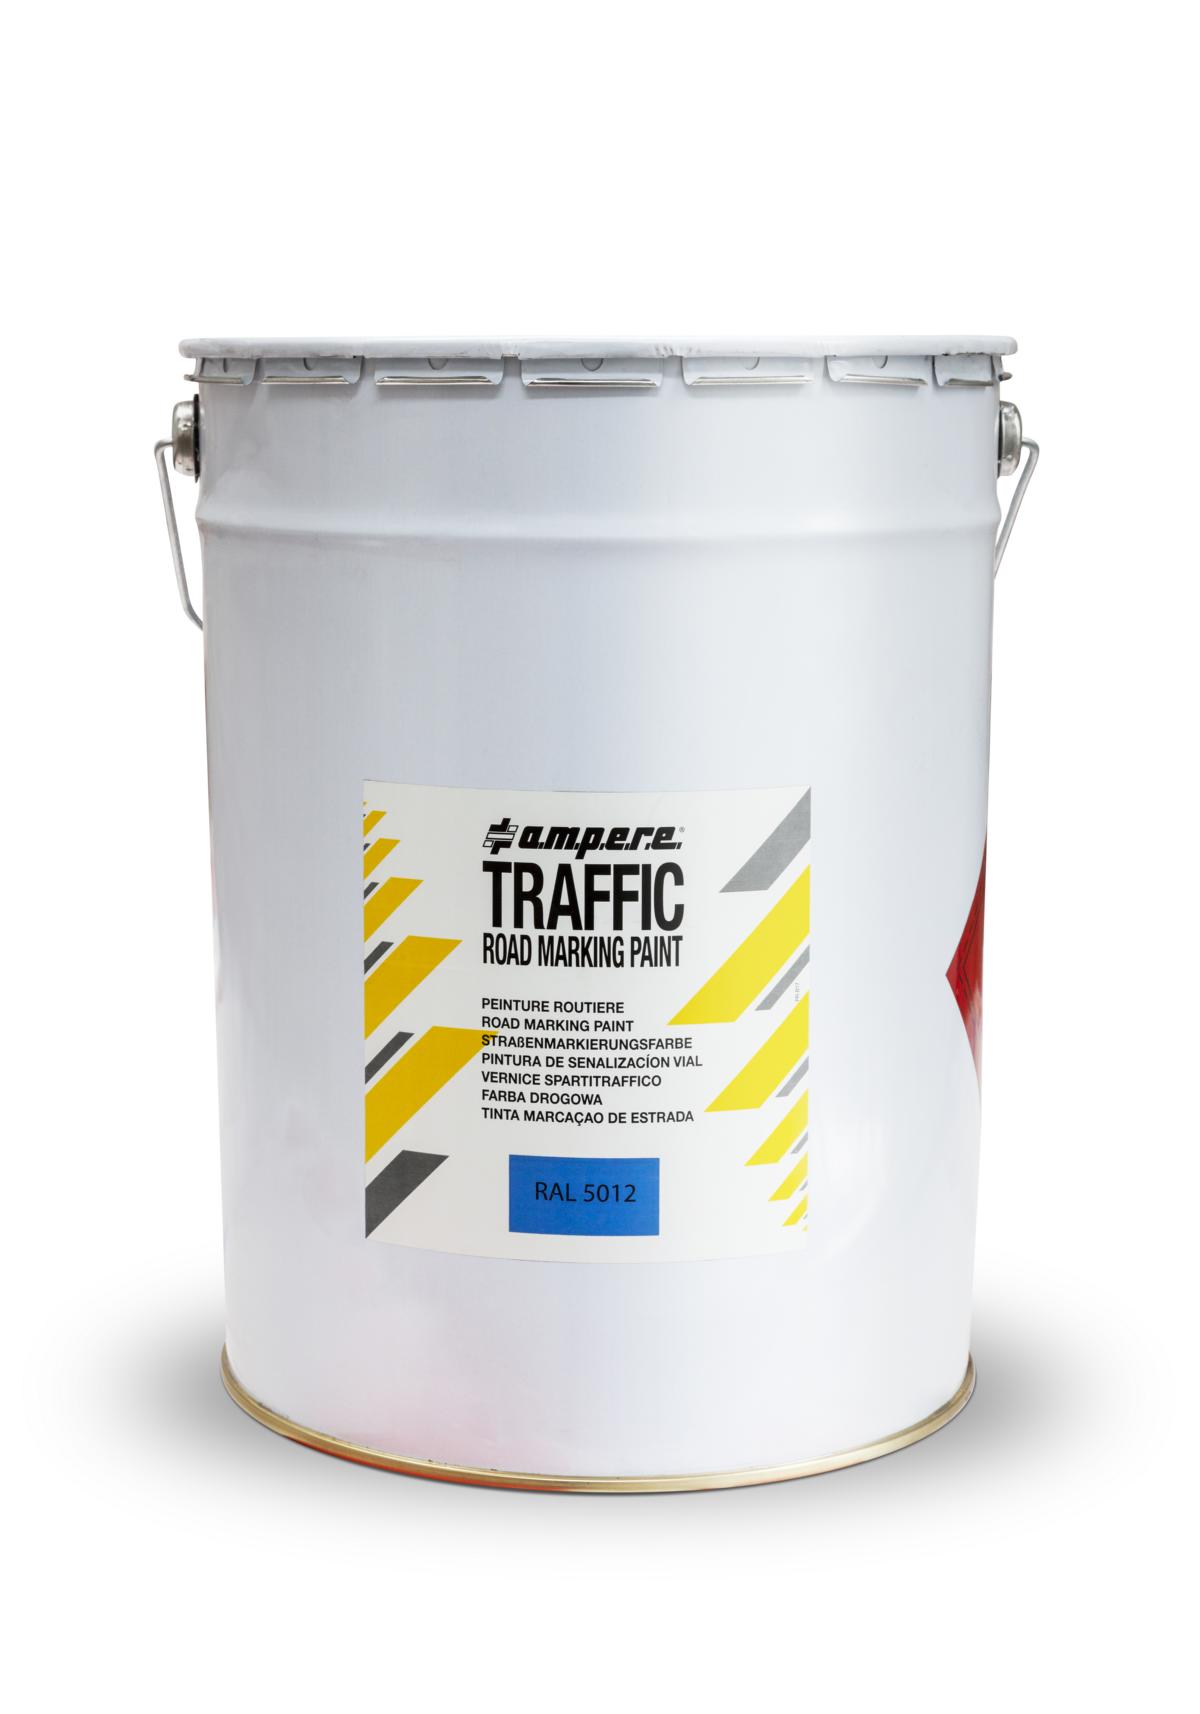 Traffic Road Marking Paint® Straßenmarkierungsfarbe, 25 kg